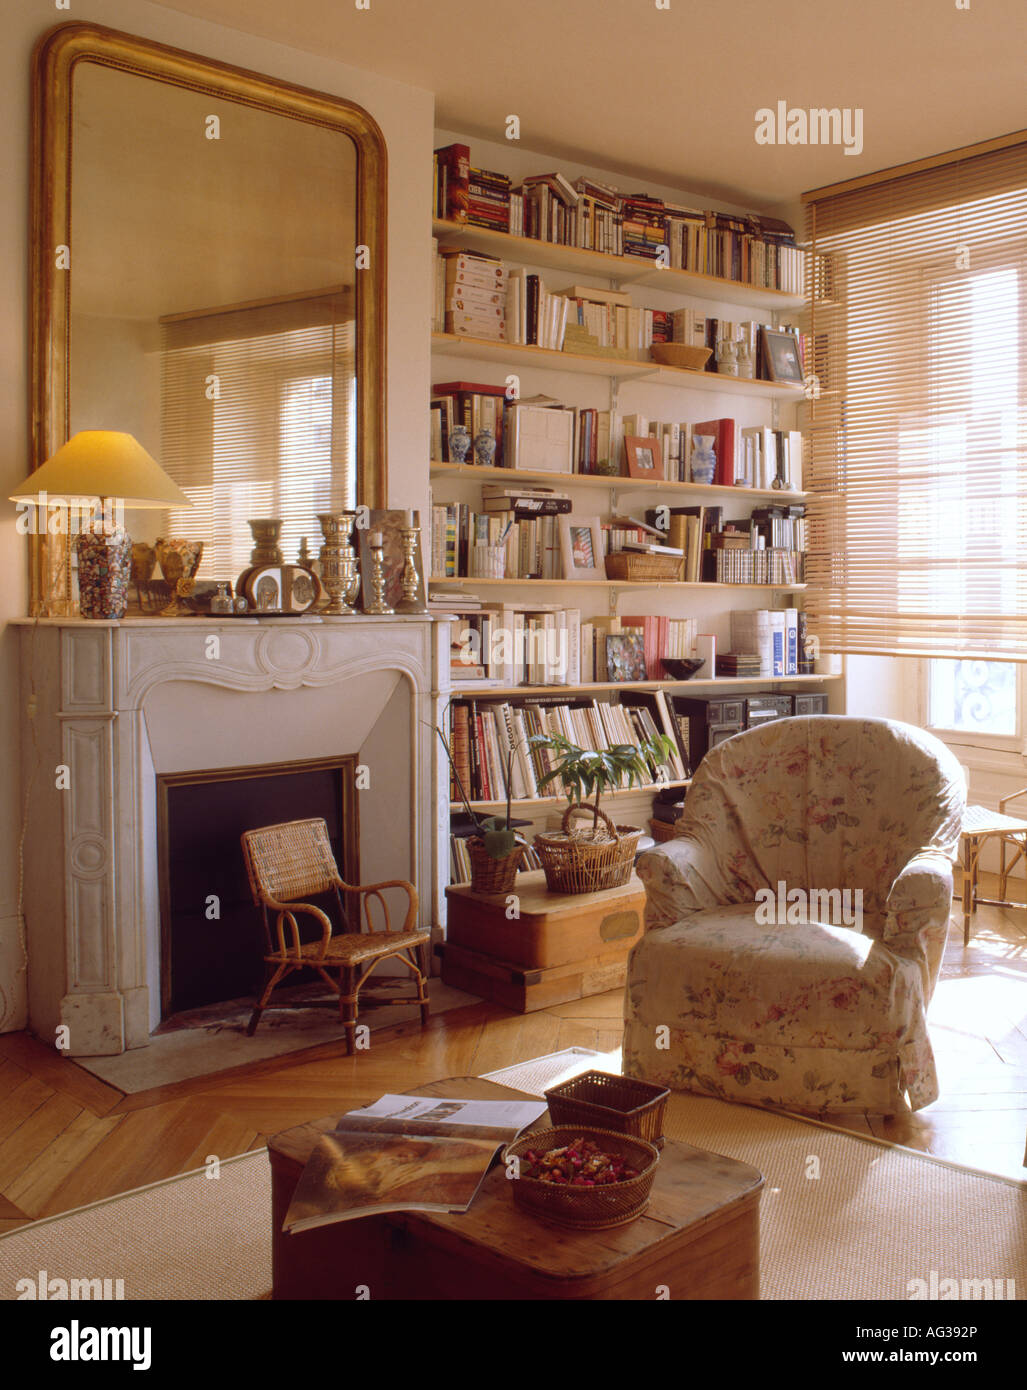 Specchio sopra il camino in francese appartamento soggiorno con libreria e  loosecover floreali su poltrona Foto stock - Alamy